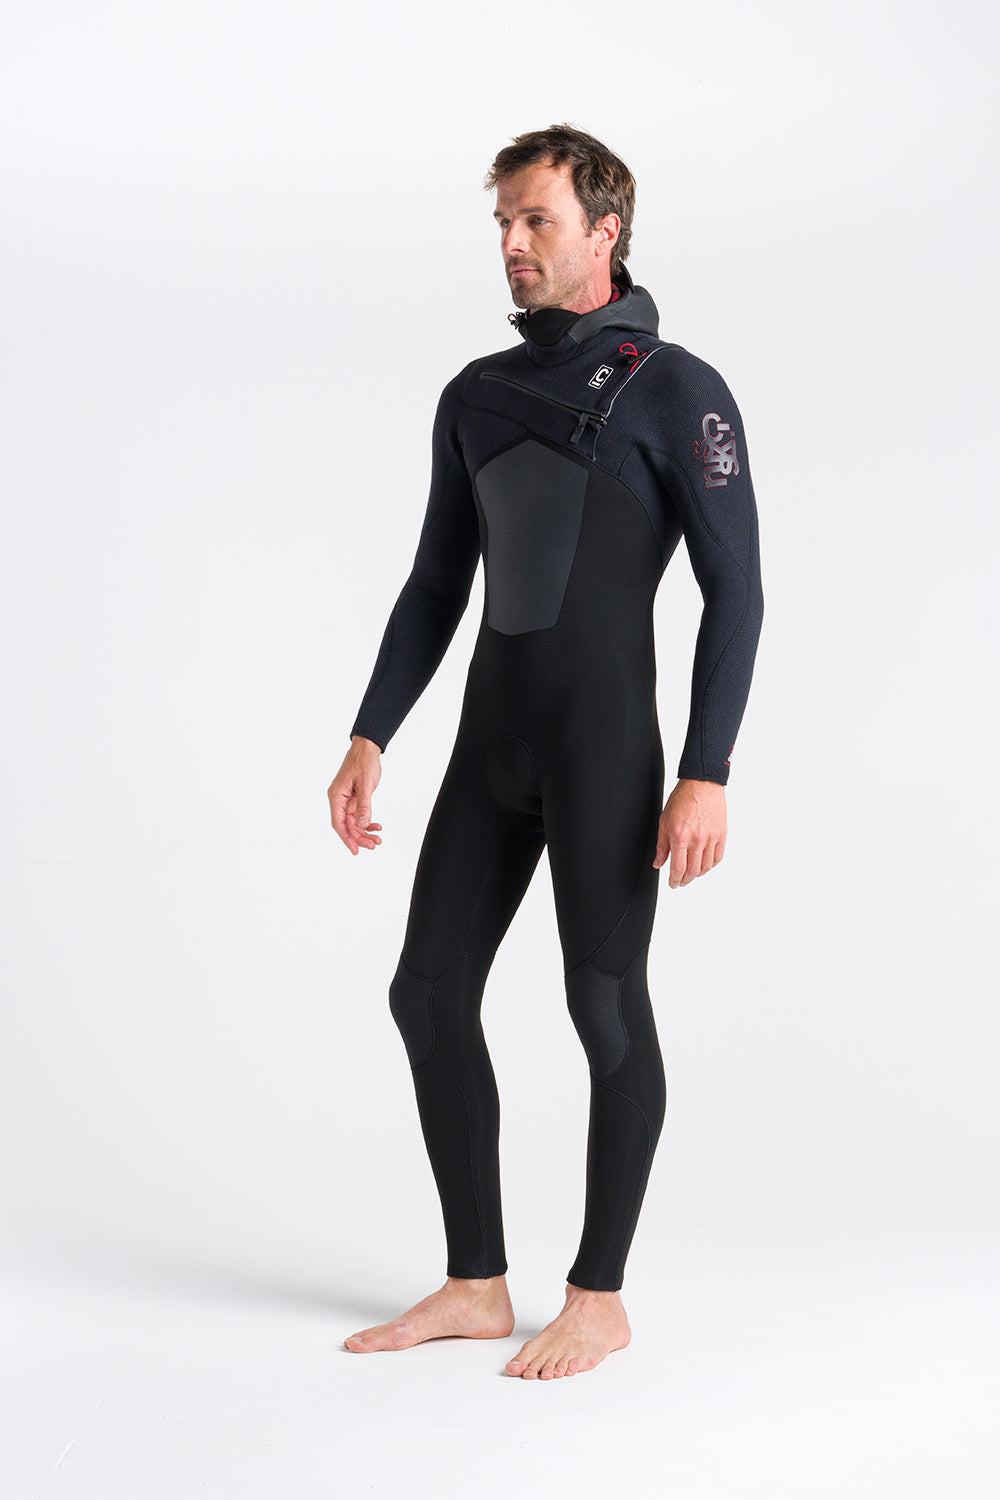 hooded-winter-wetsuit-men-galway-blacksheep-cskins